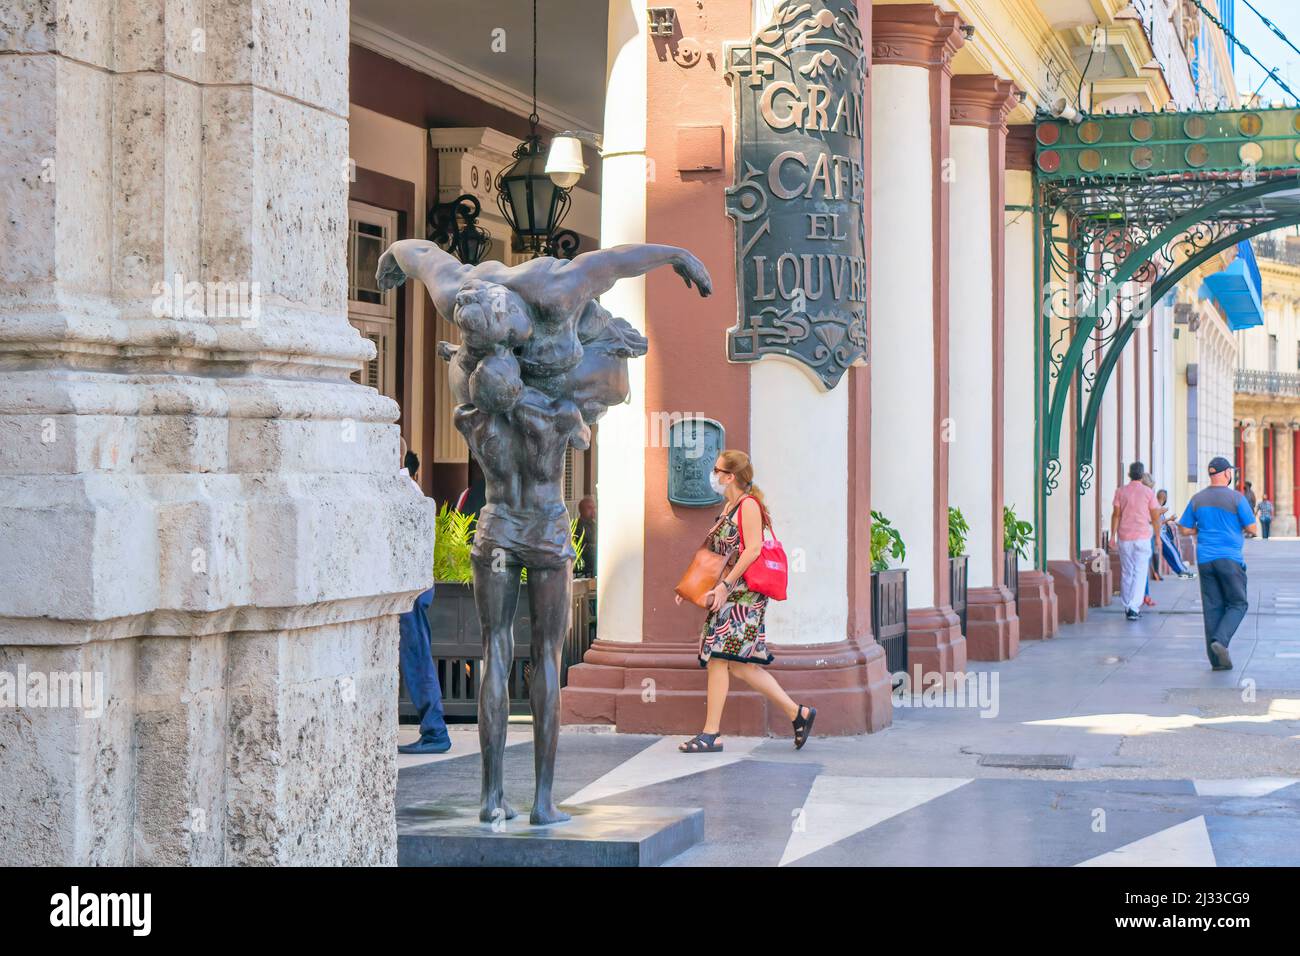 Metallskulpturen oder urbane Kunst auf dem Bürgersteig des berühmten Gran Cafe El Louvre im zentralen Viertel von Havanna. Diese Gegend ist ein berühmter Ort Stockfoto